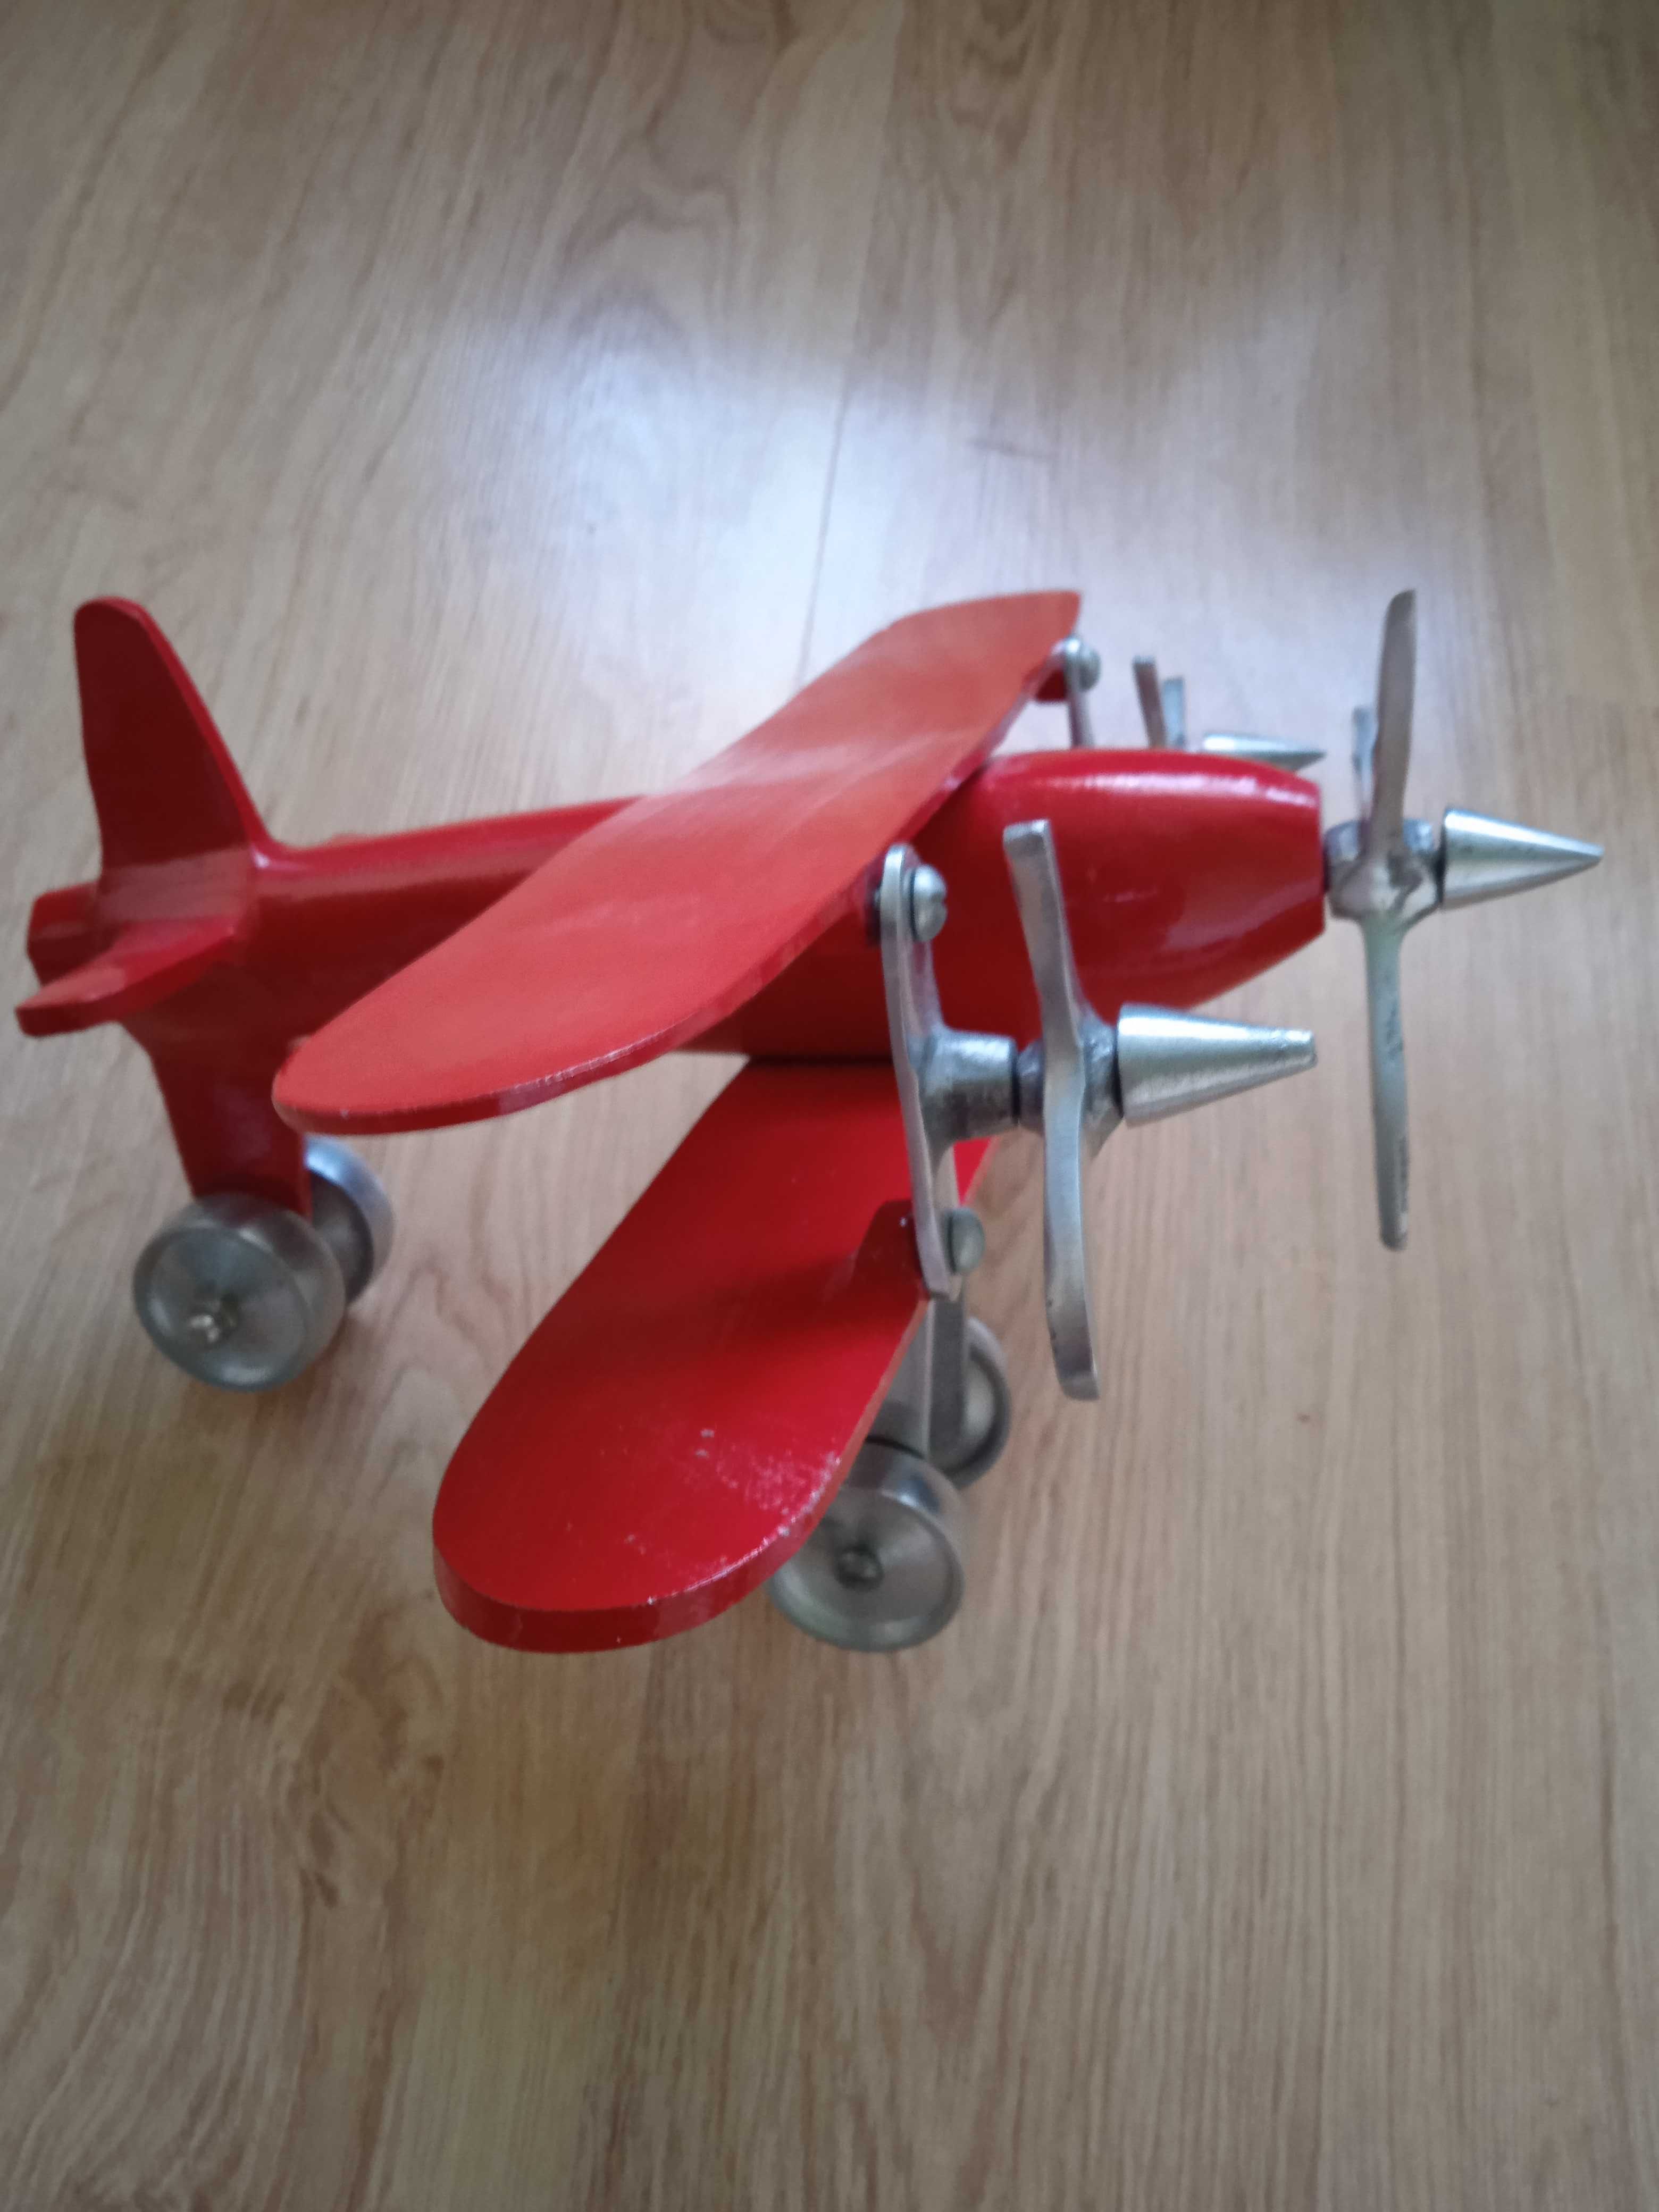 Czerwony melatowy samolot zabawka dla dziecka lub kolekcjonera unikat